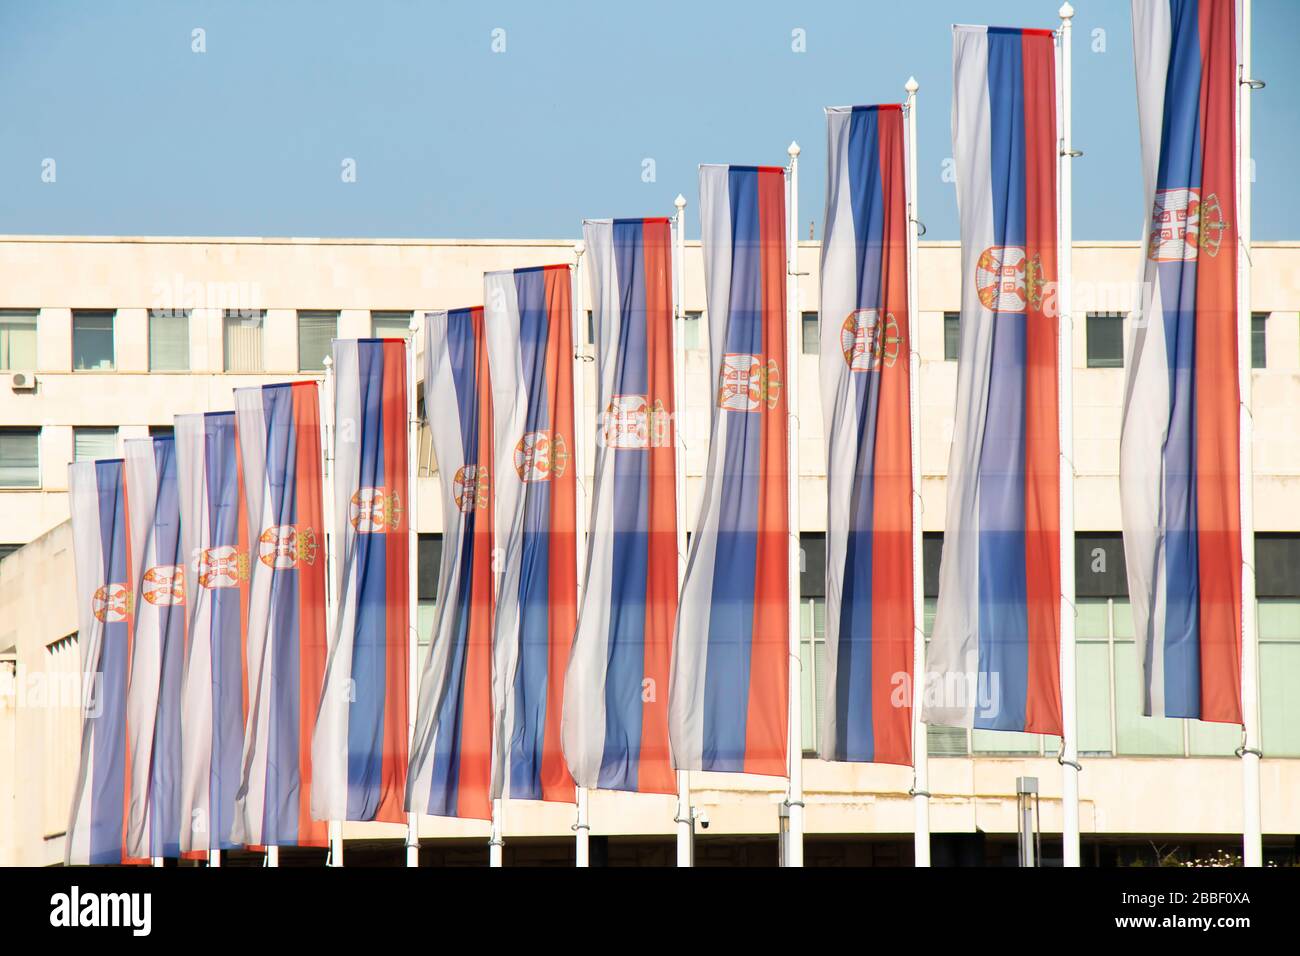 Belgrad, Serbien - 20. März 2020: Serbische Nationalflaggen auf Pfosten vor dem Palast von Serbien, einem Regierungsgebäude in New Belgrad Stockfoto